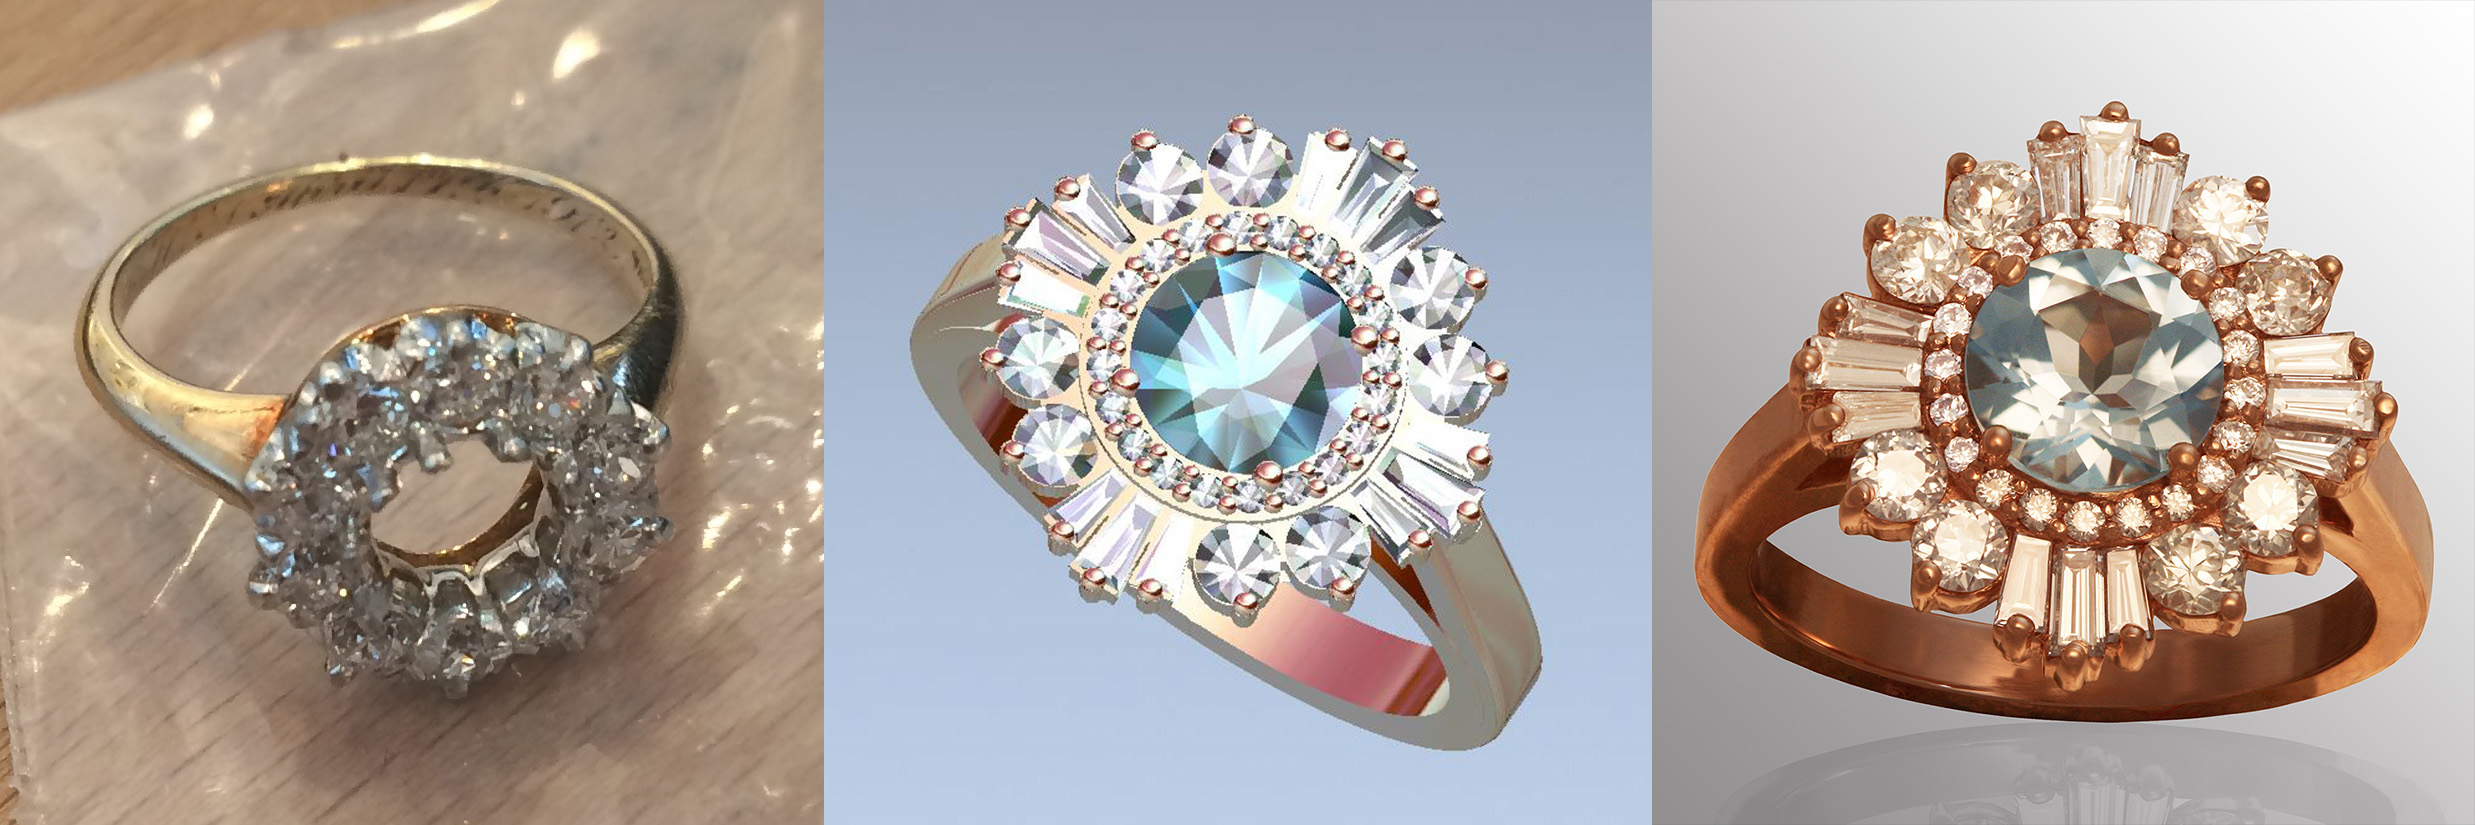 Aquamarine Engagement Ring with Brilliant-cut Round & Baguette Diamonds